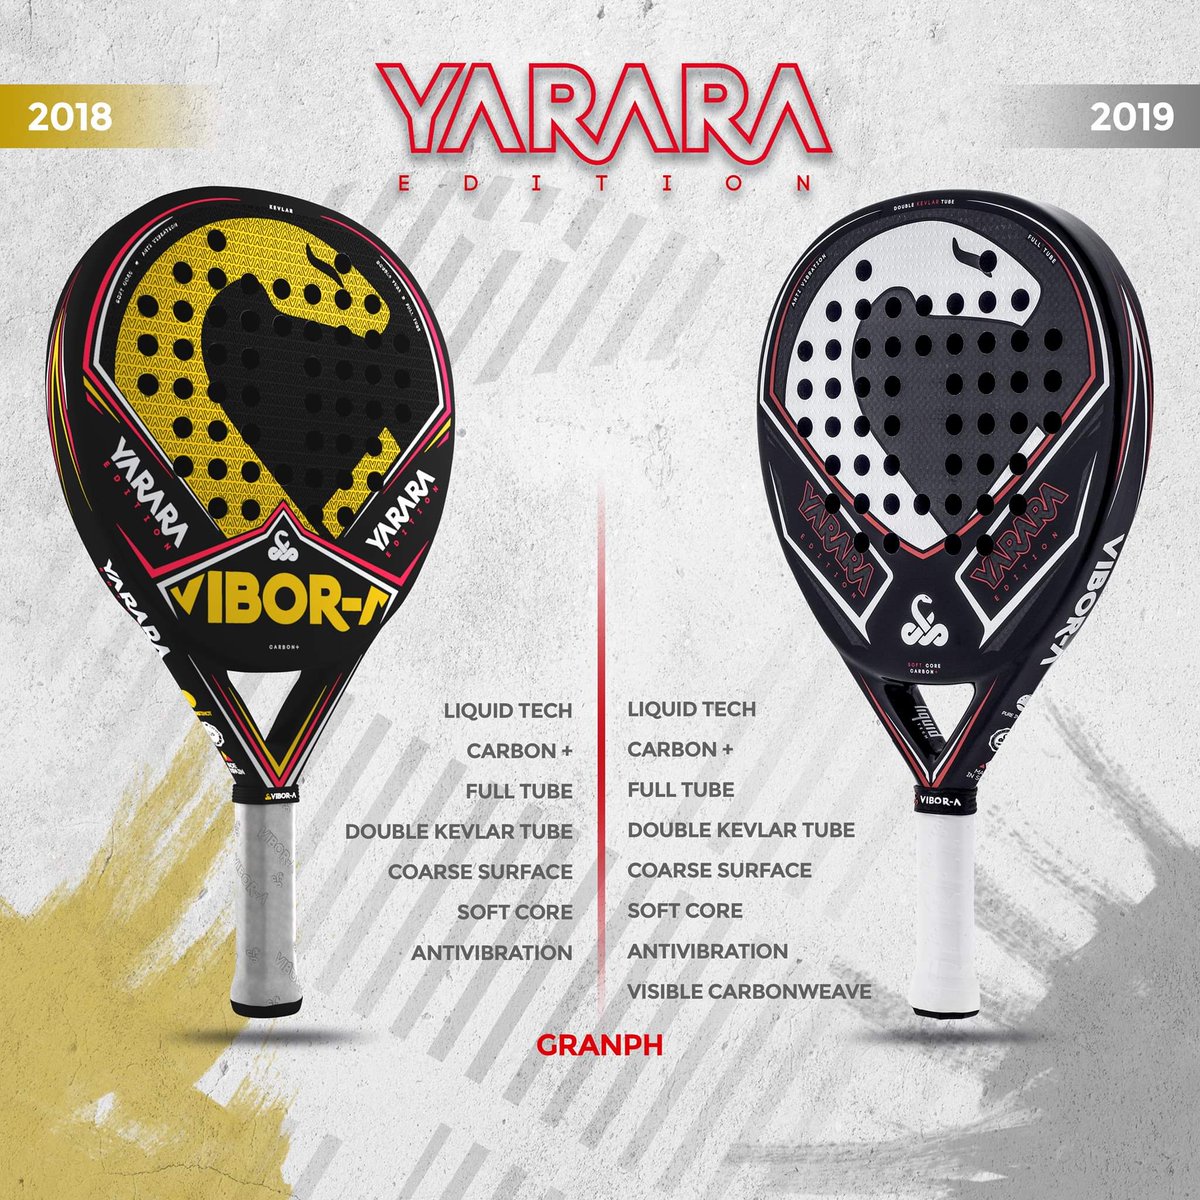 Review Vibora Yarara Edition 2019| Noticias y novedades del mundo del pádel